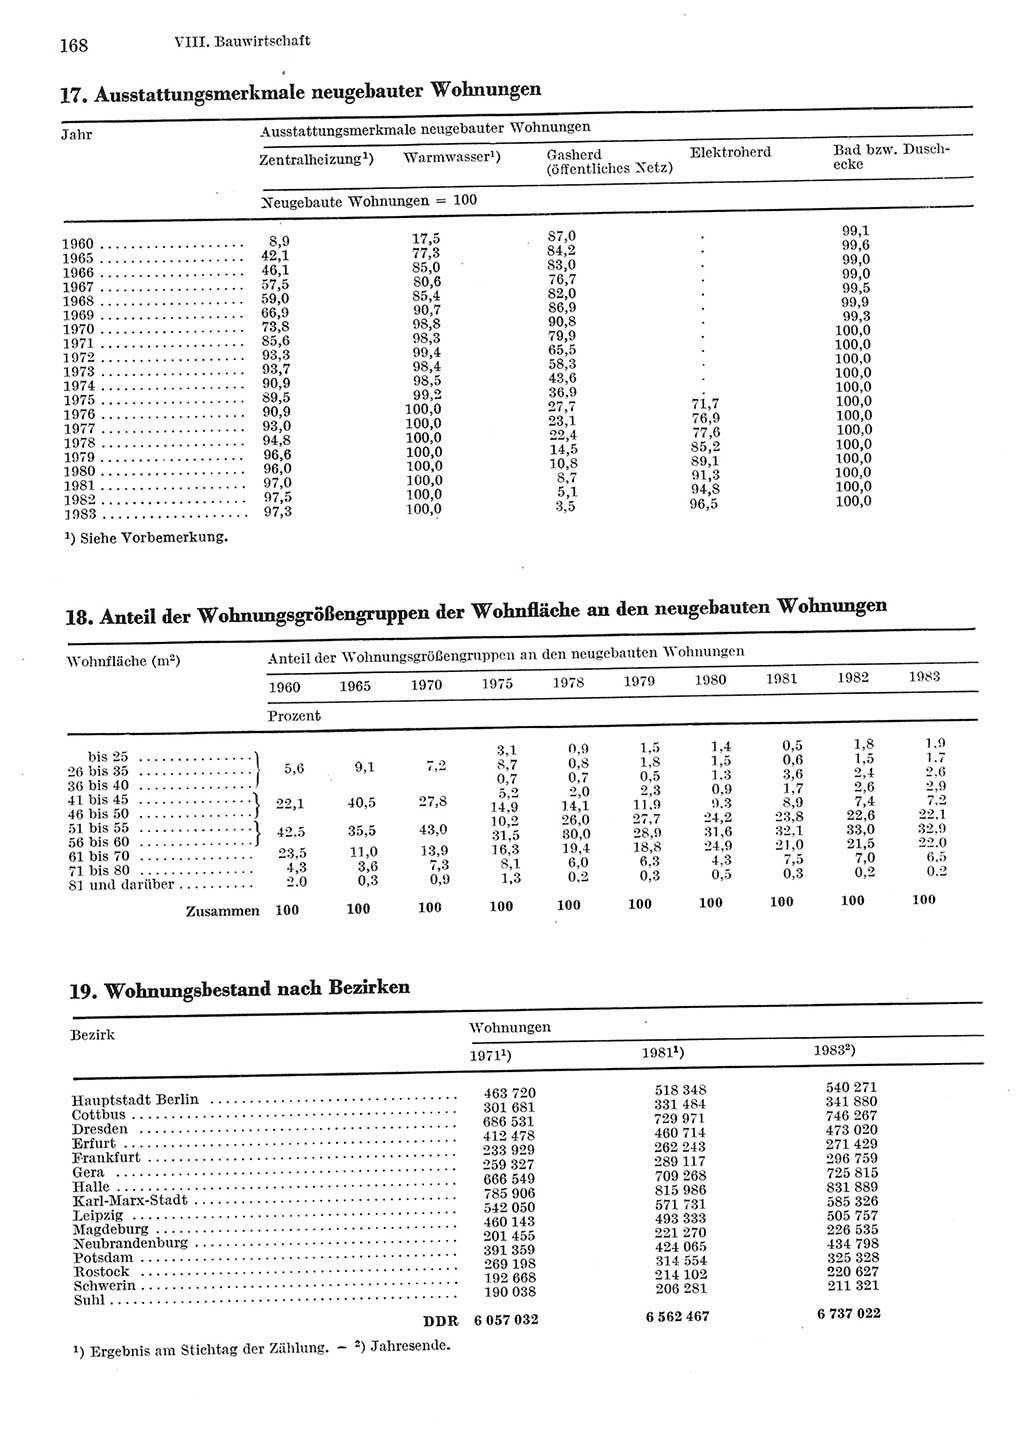 Statistisches Jahrbuch der Deutschen Demokratischen Republik (DDR) 1984, Seite 168 (Stat. Jb. DDR 1984, S. 168)